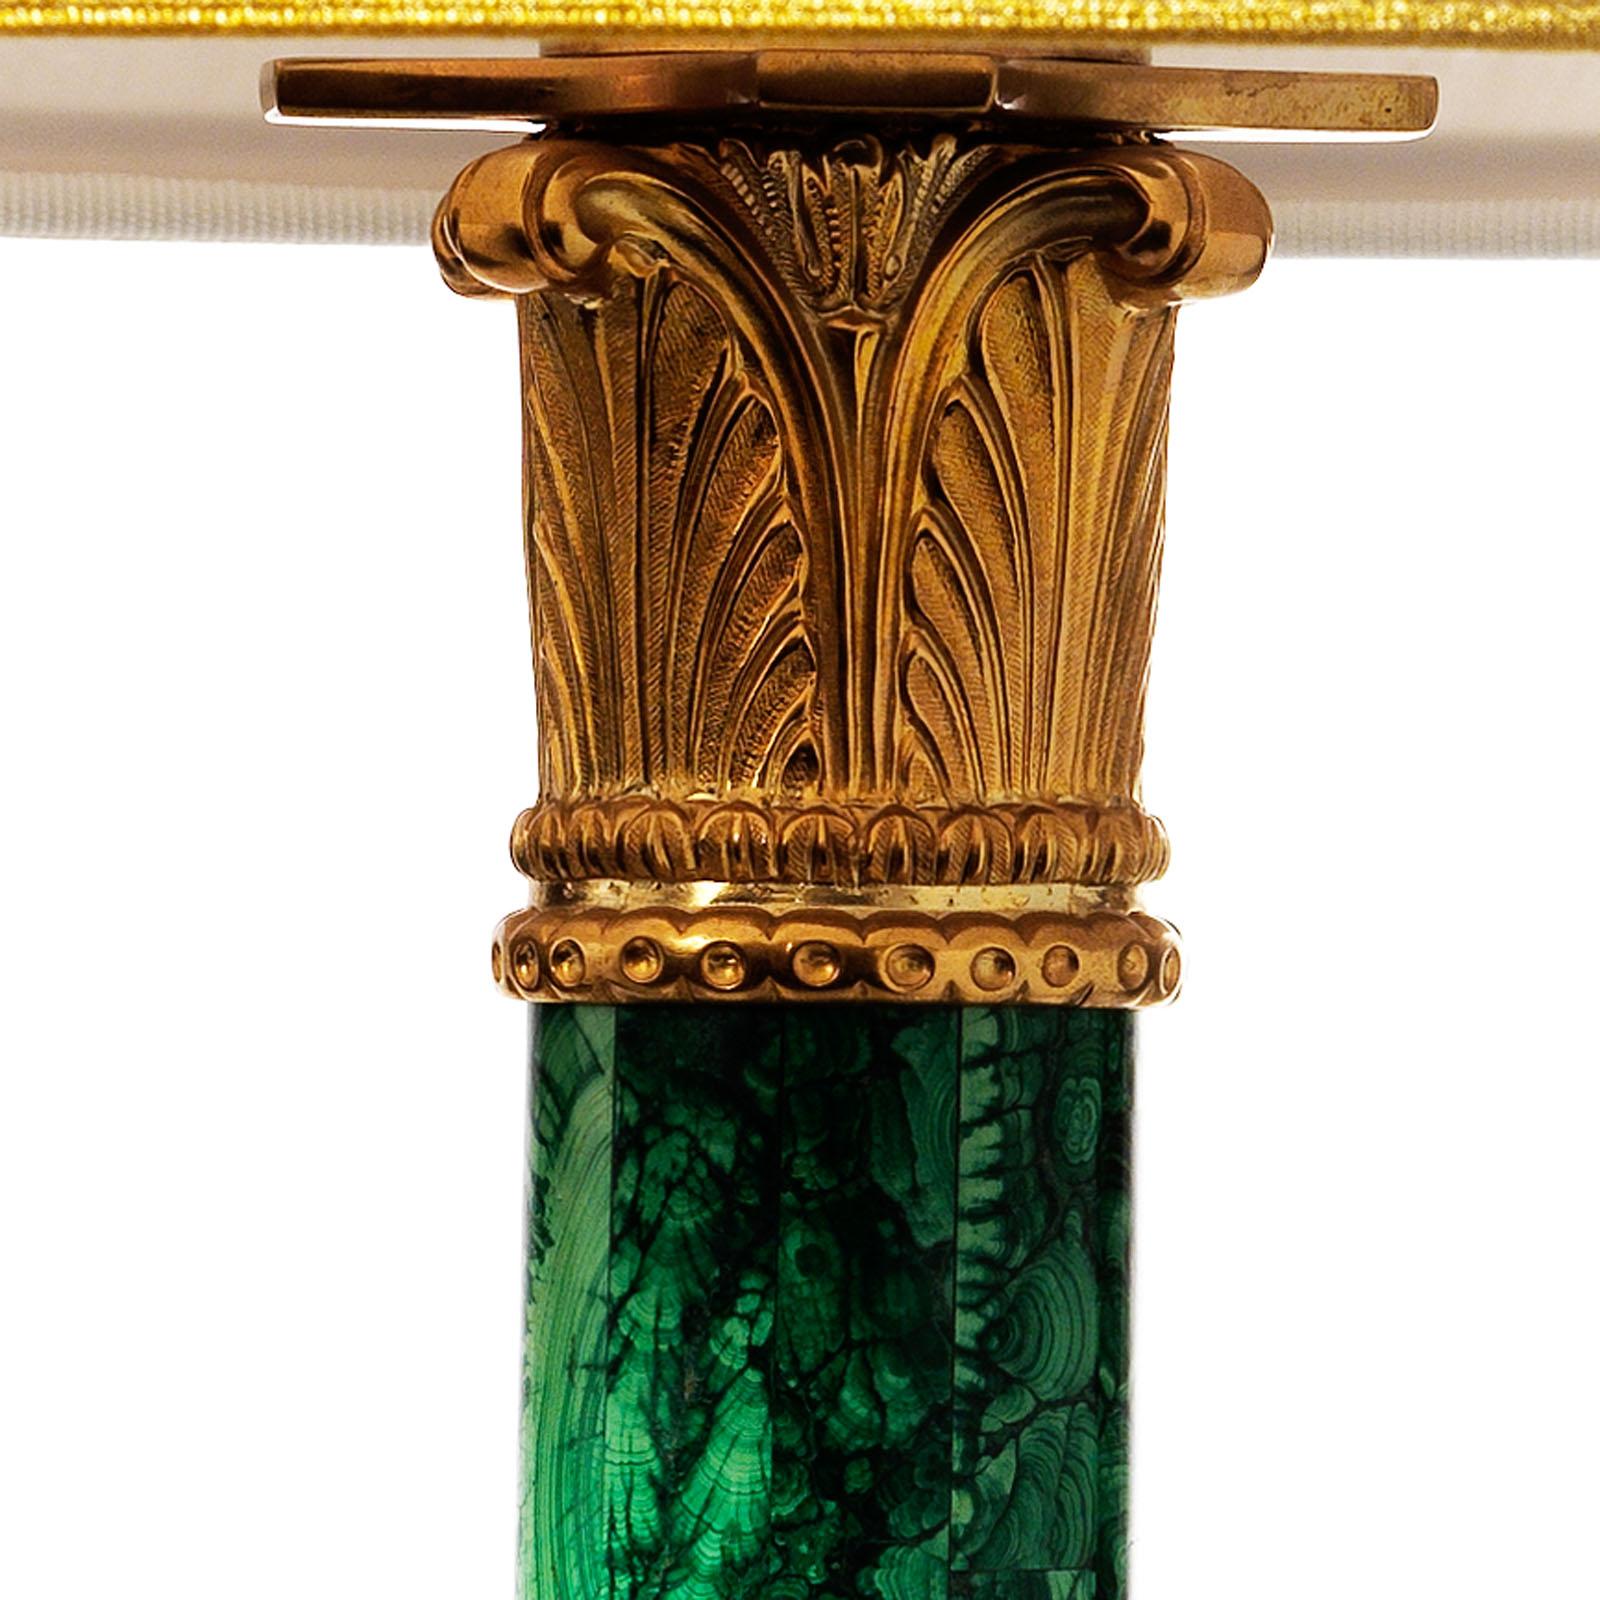 Tischlampe aus Malachit und vergoldeter Bronze im Louis XVI-Stil von Gherardo Degli Albizzi.
Diese Lampe hat ein sehr raffiniertes Design mit einem klassischen Kapitell mit Pflanzenmotiven und Masken, die in Pflanzengirlanden eingeschrieben sind.